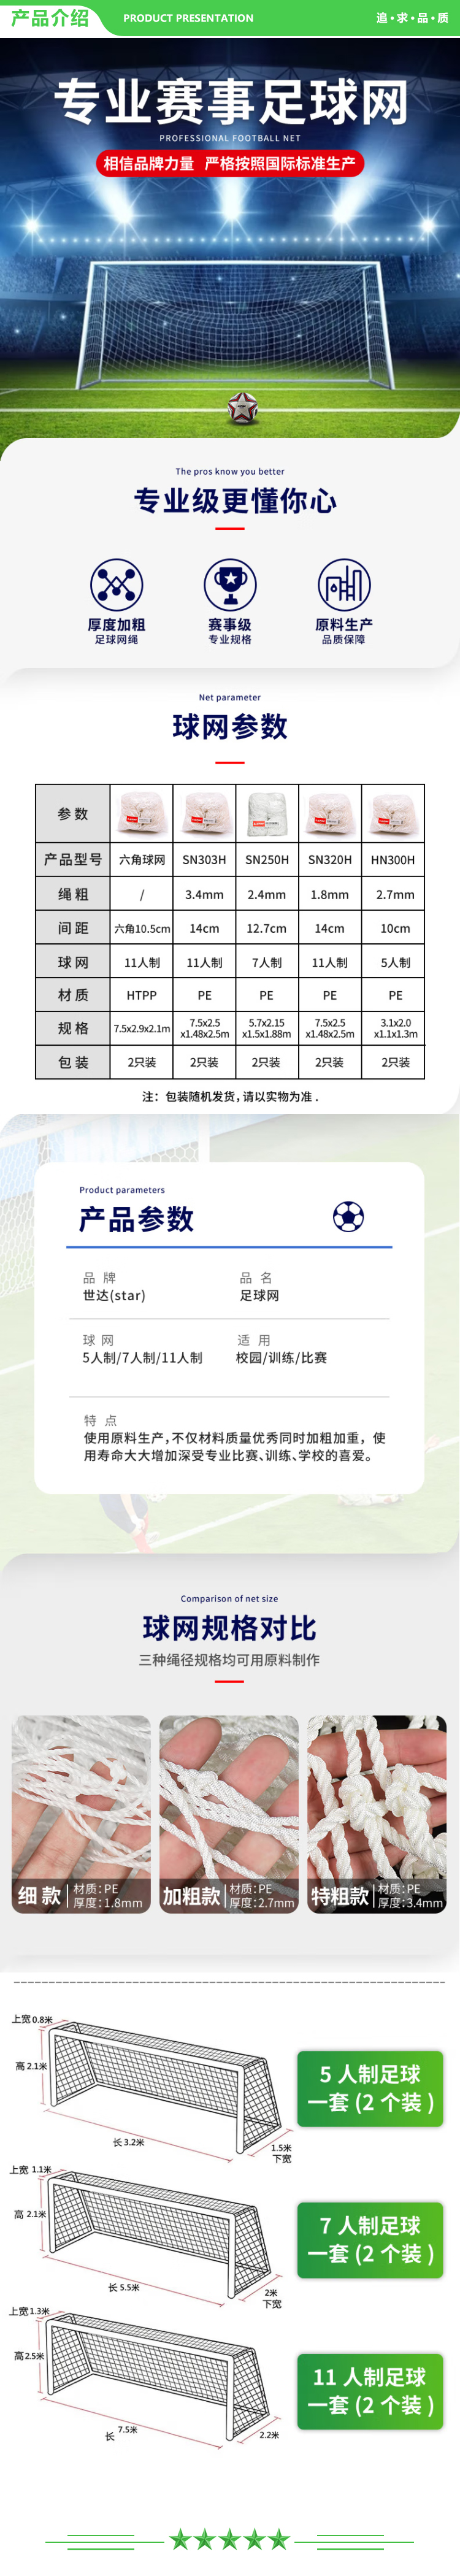 世达 star SN320H 比赛足球网5-7-11人制加粗足球网足球场网 11人制 足球网(比赛用B型) .jpg